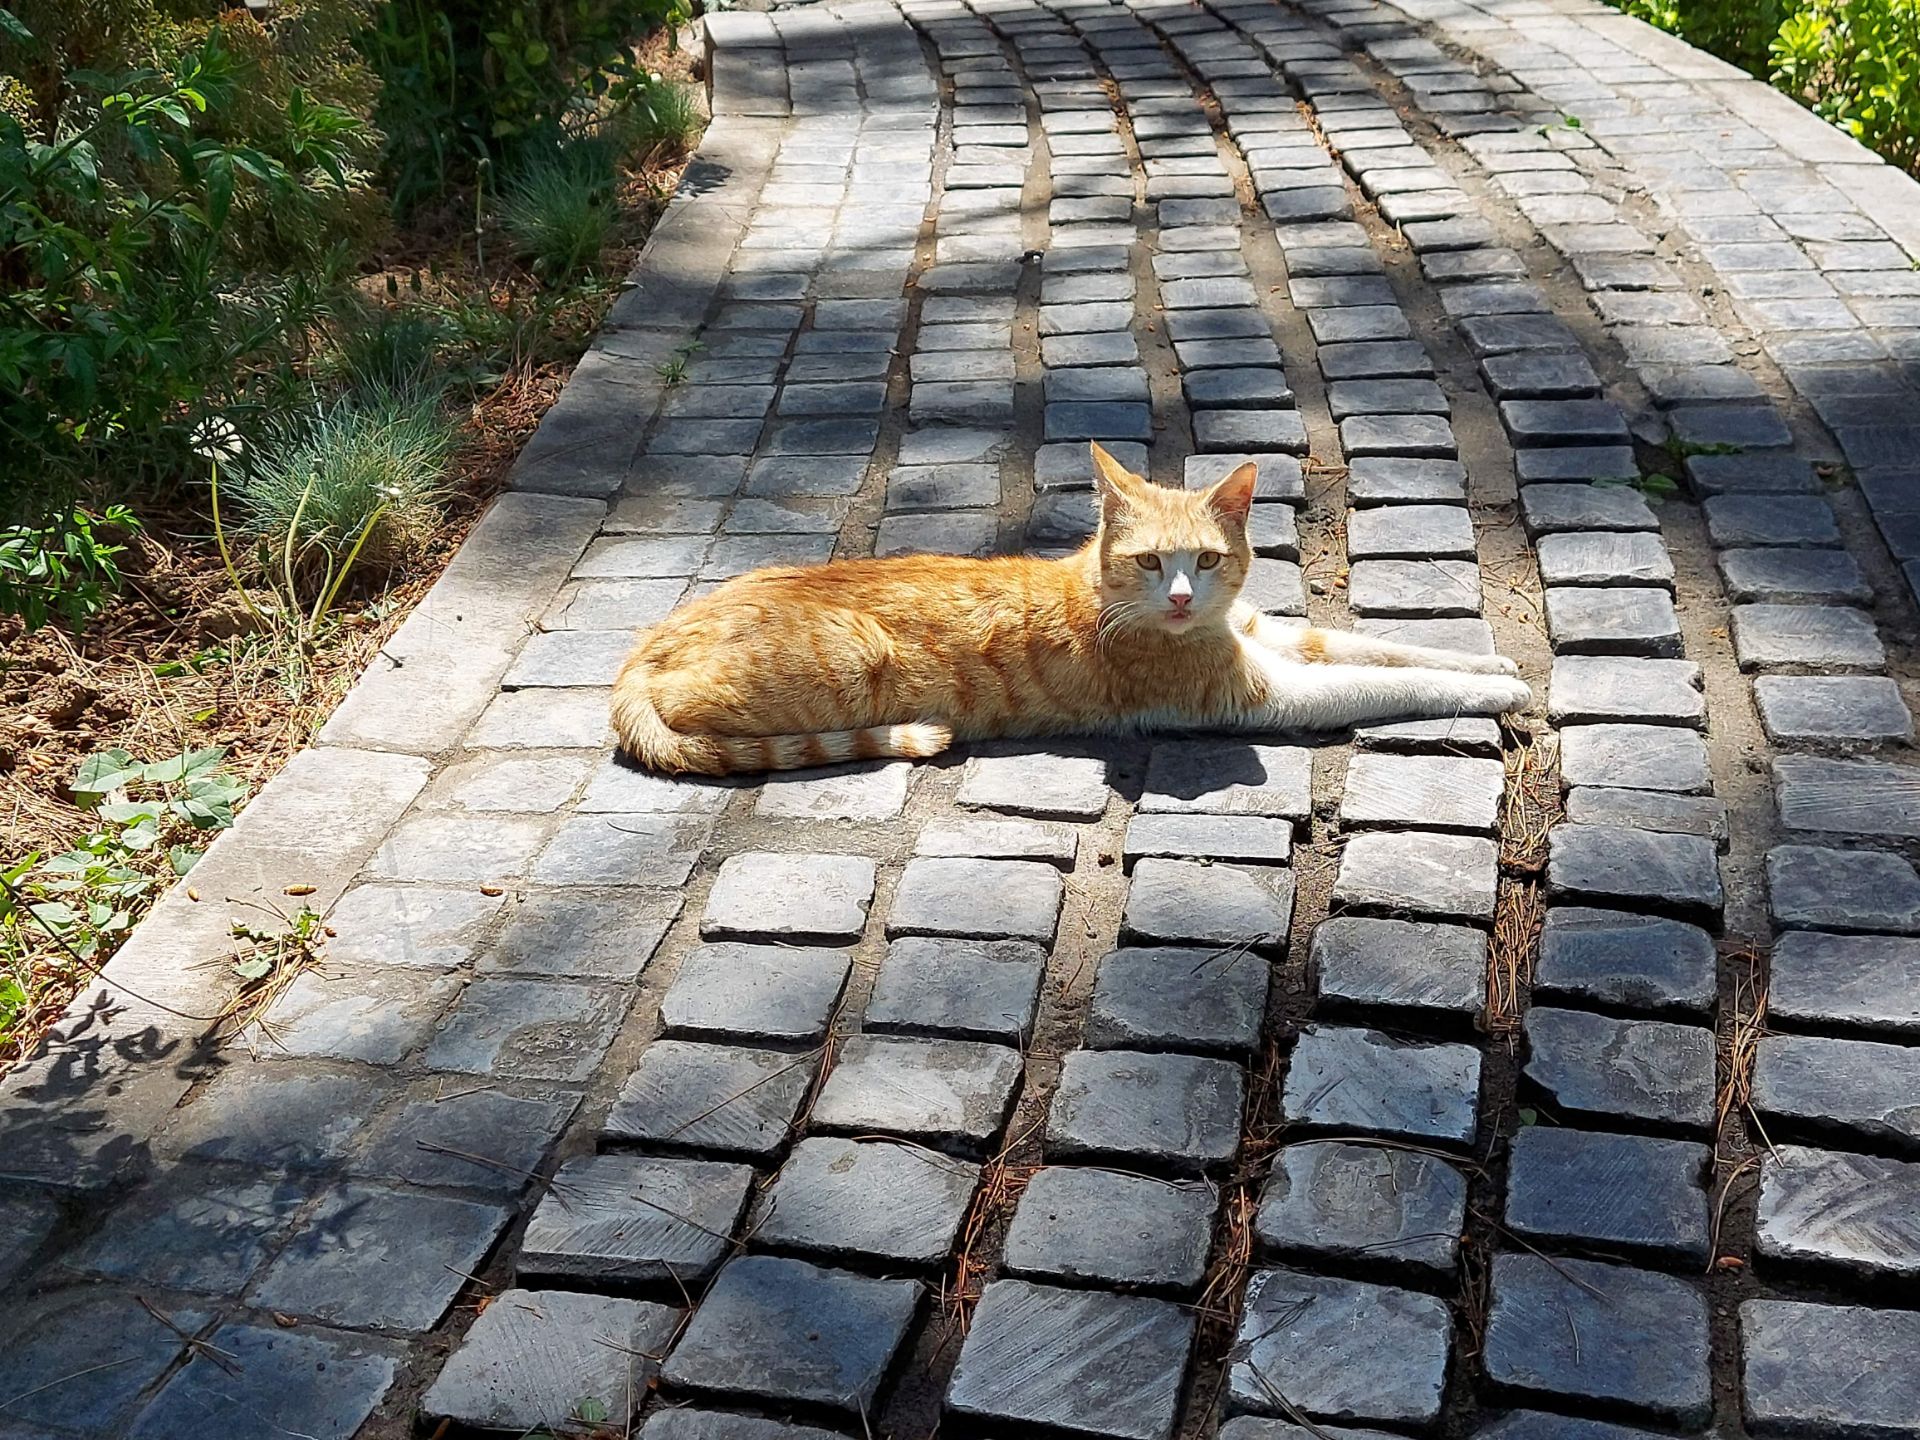 مرجع متخصصين ايران عكس نمونه با اخبار تخصصي ۲ برابري گلكسي M51 سامسونگ - گربه اي در پارك صبا خيابان جردن